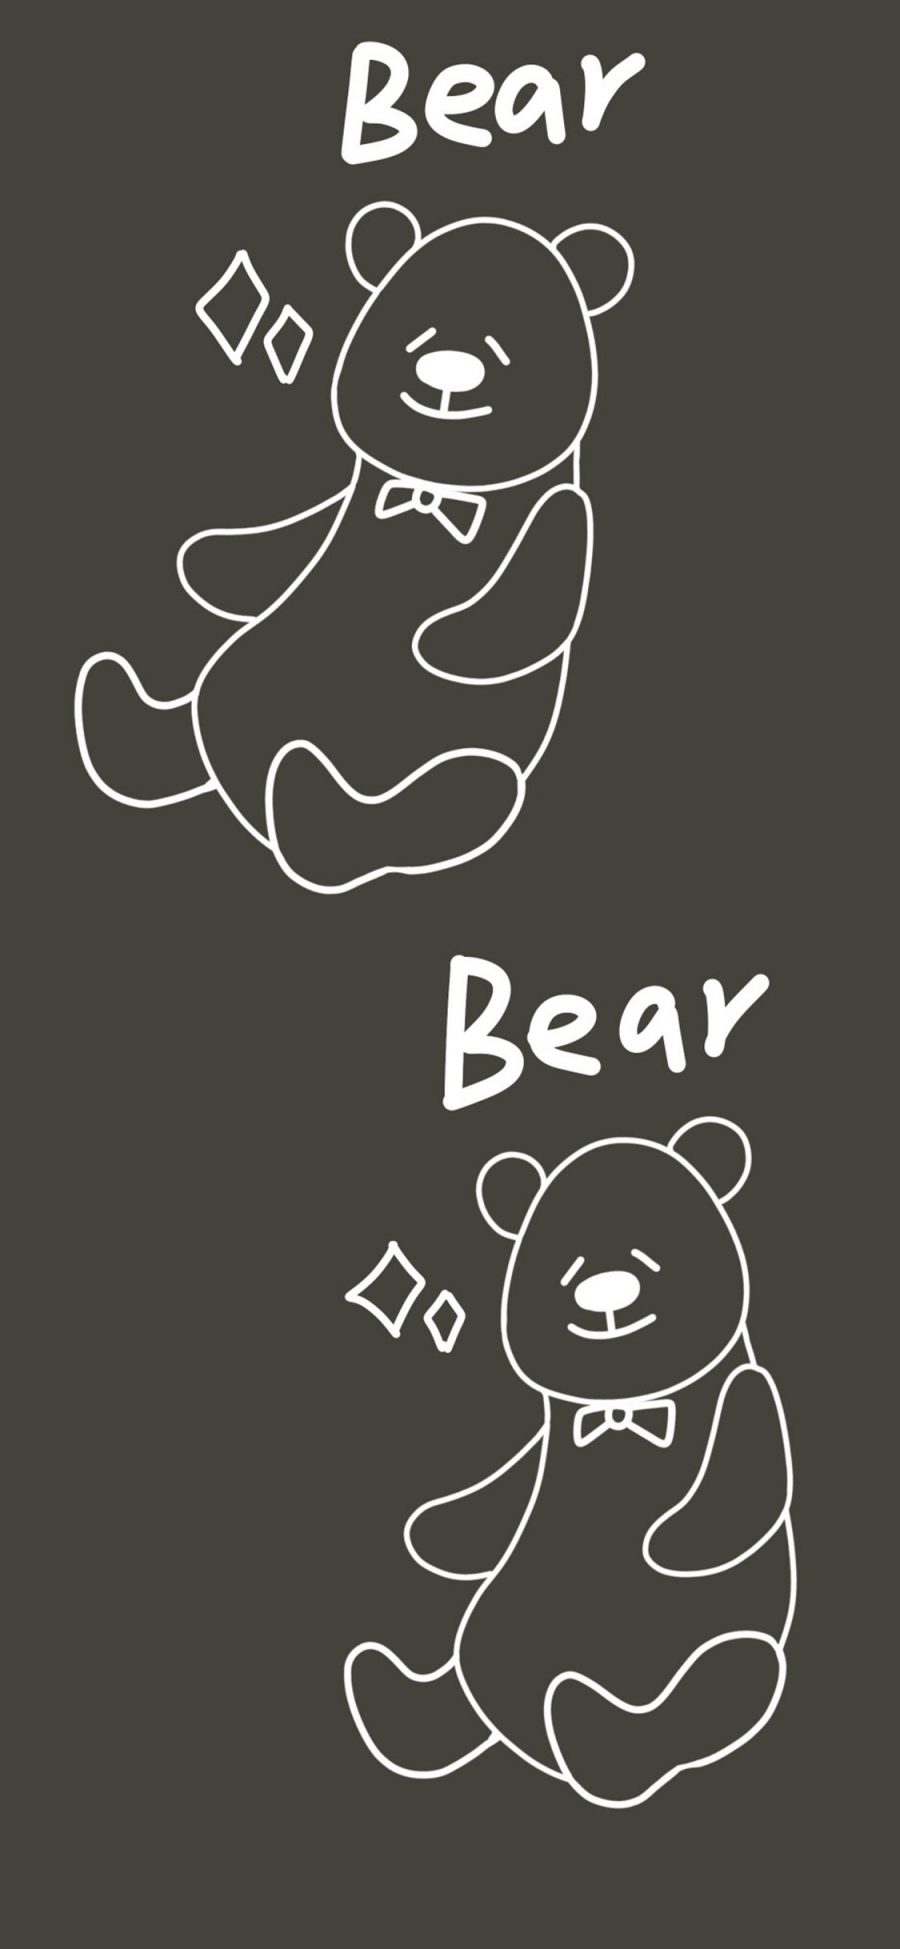 [2436×1125]卡通 小熊 bear 简笔 苹果手机动漫壁纸图片